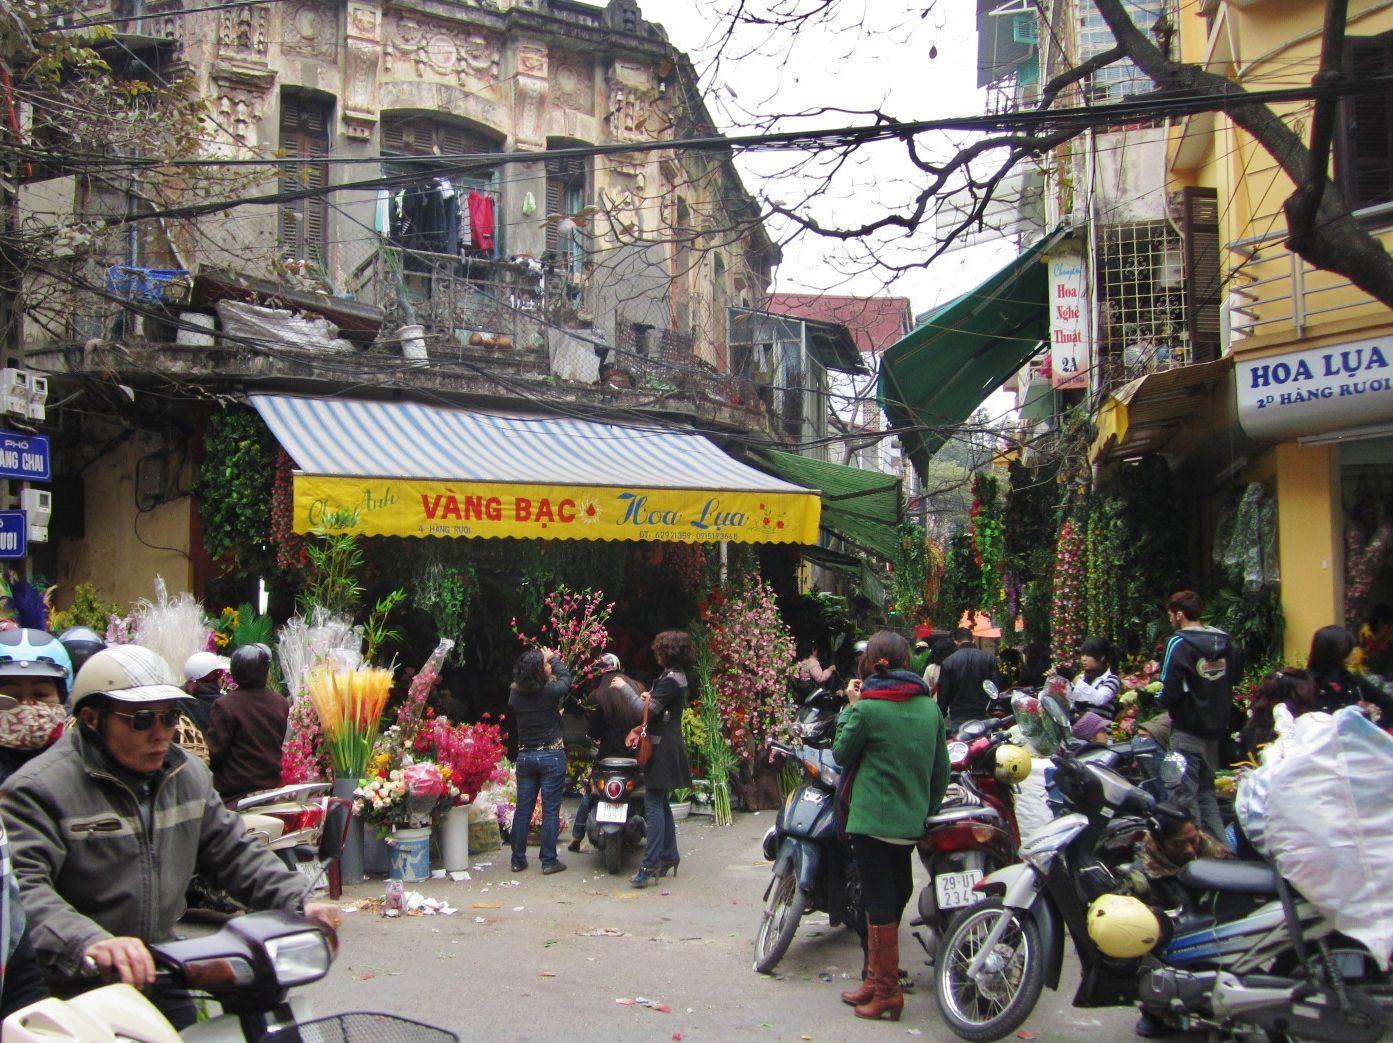 Hanoi One Absolutely Amazing City